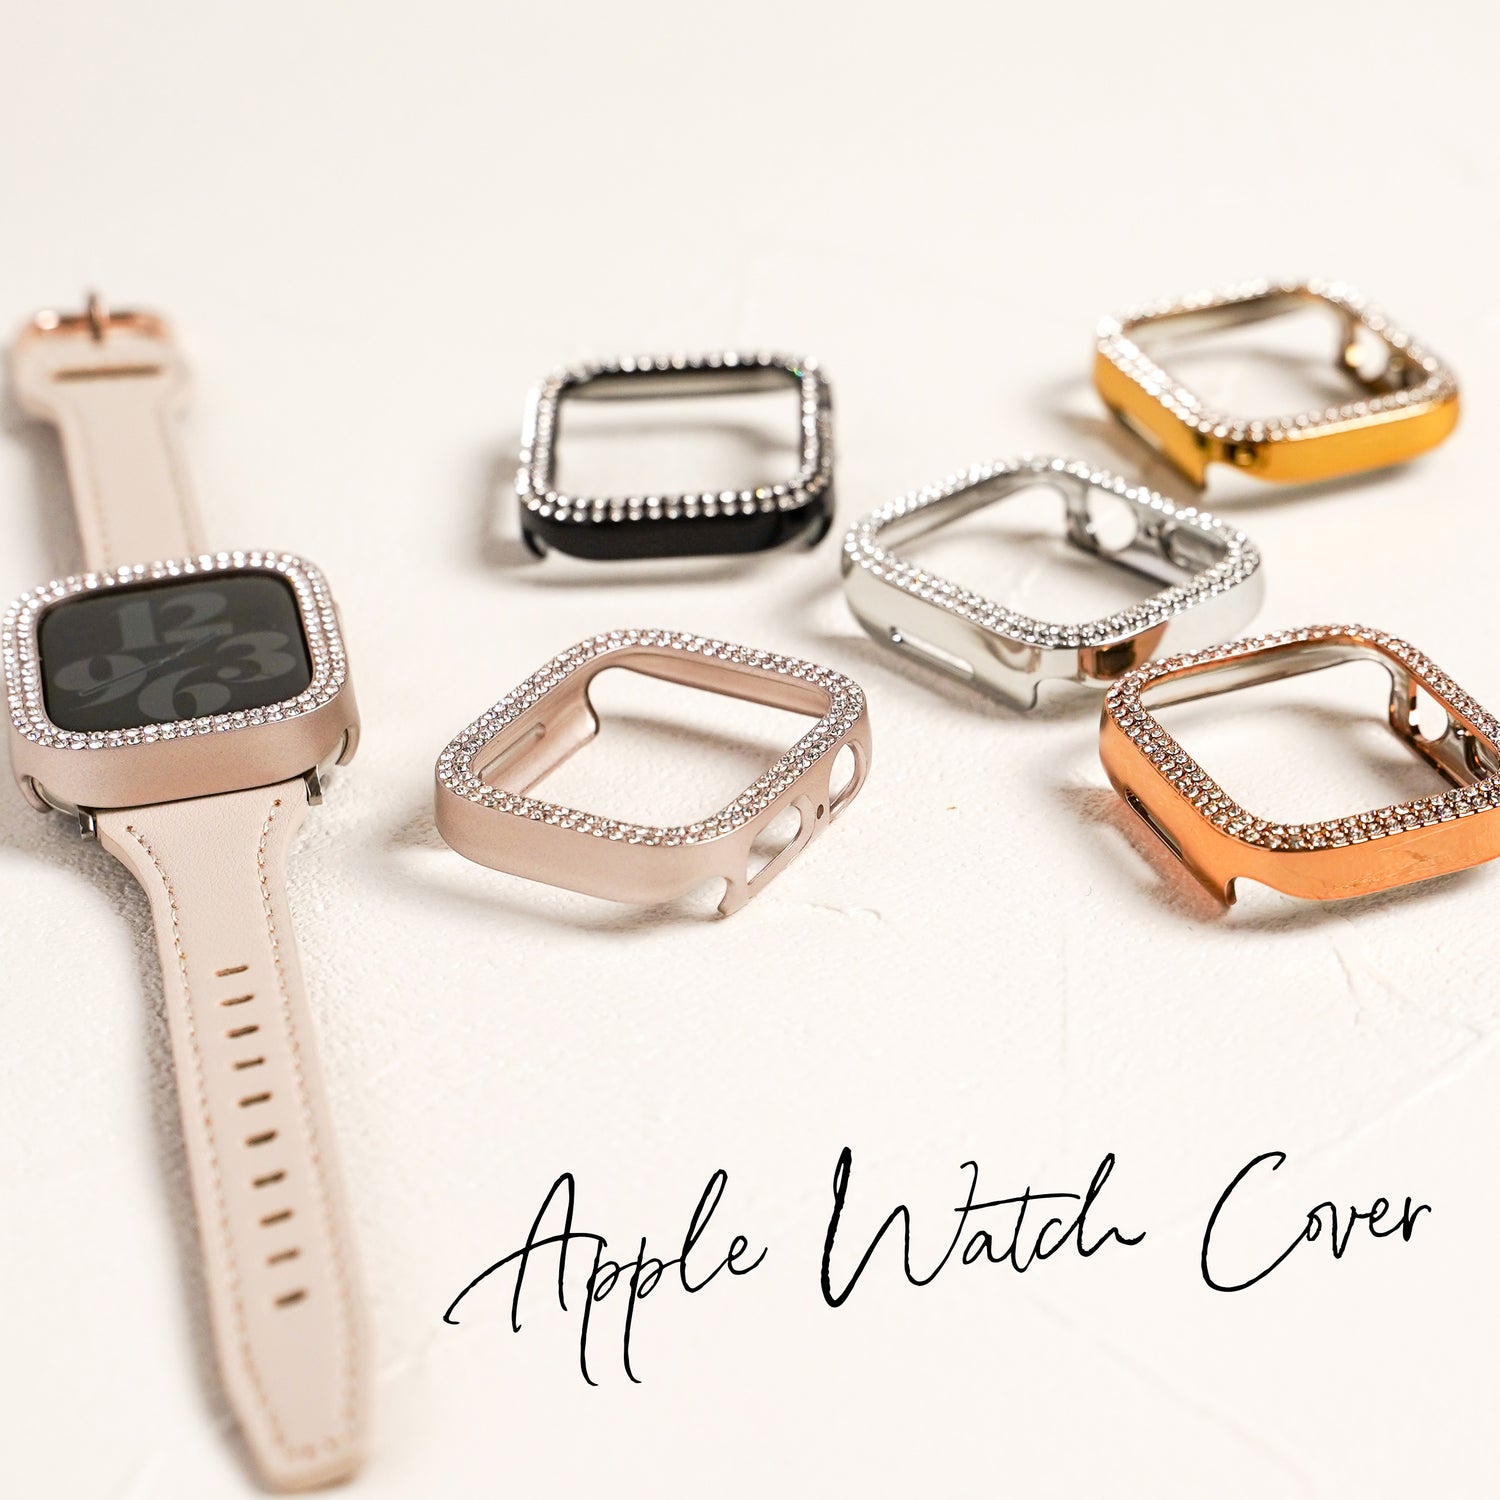 アップルウォッチカバー Apple Watch Cover